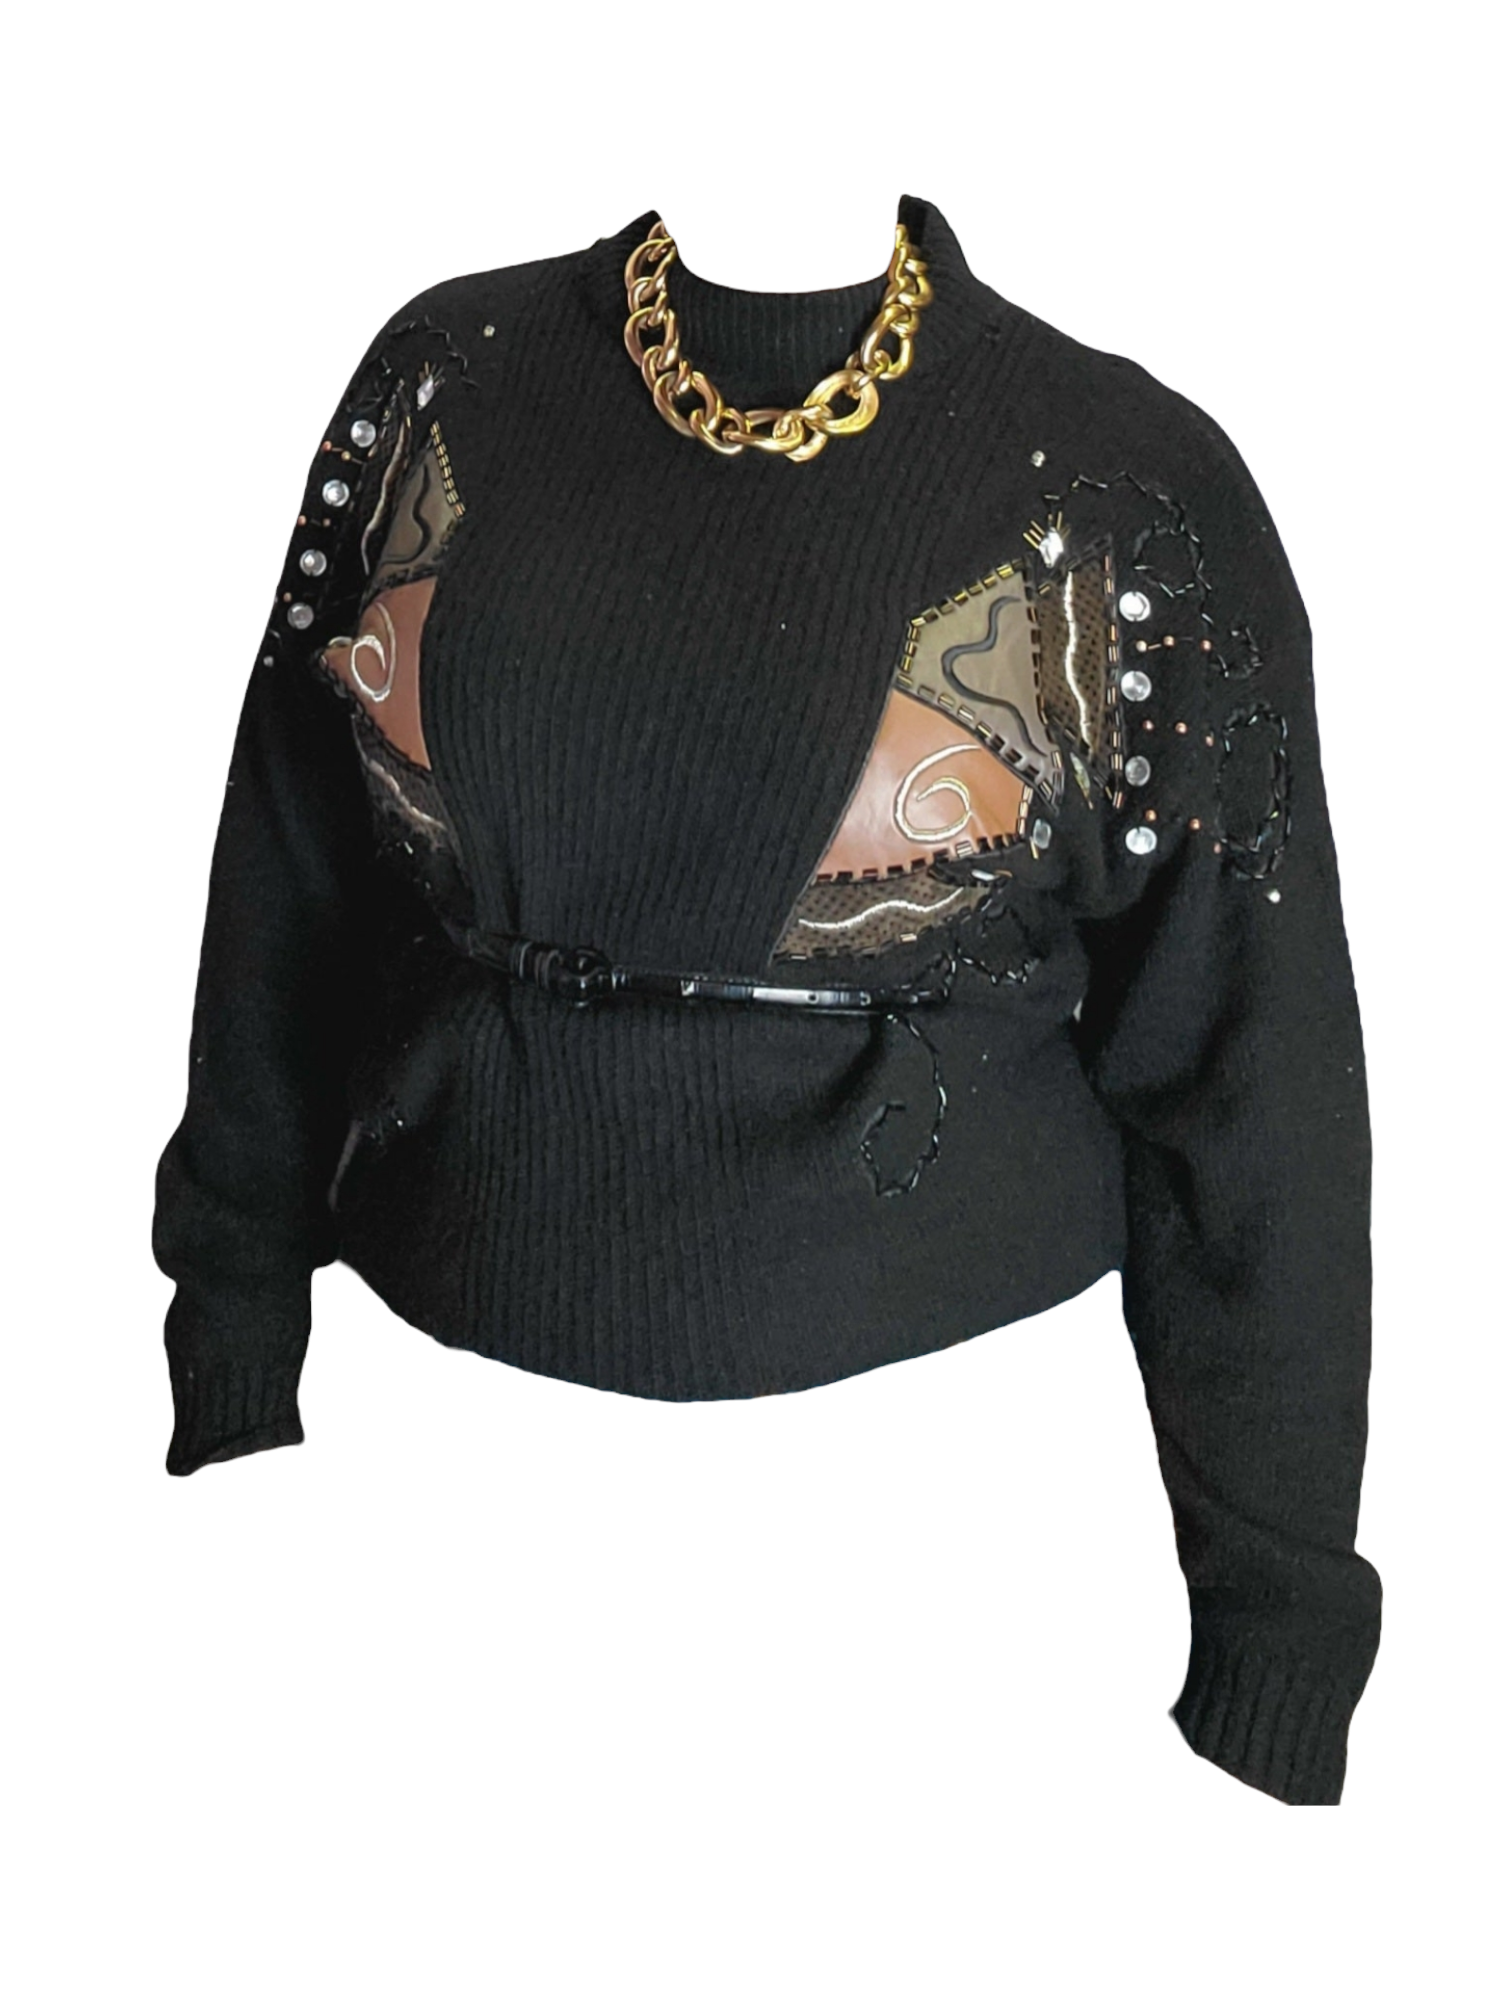 Vintage black embellished turtleneck sweater sz L